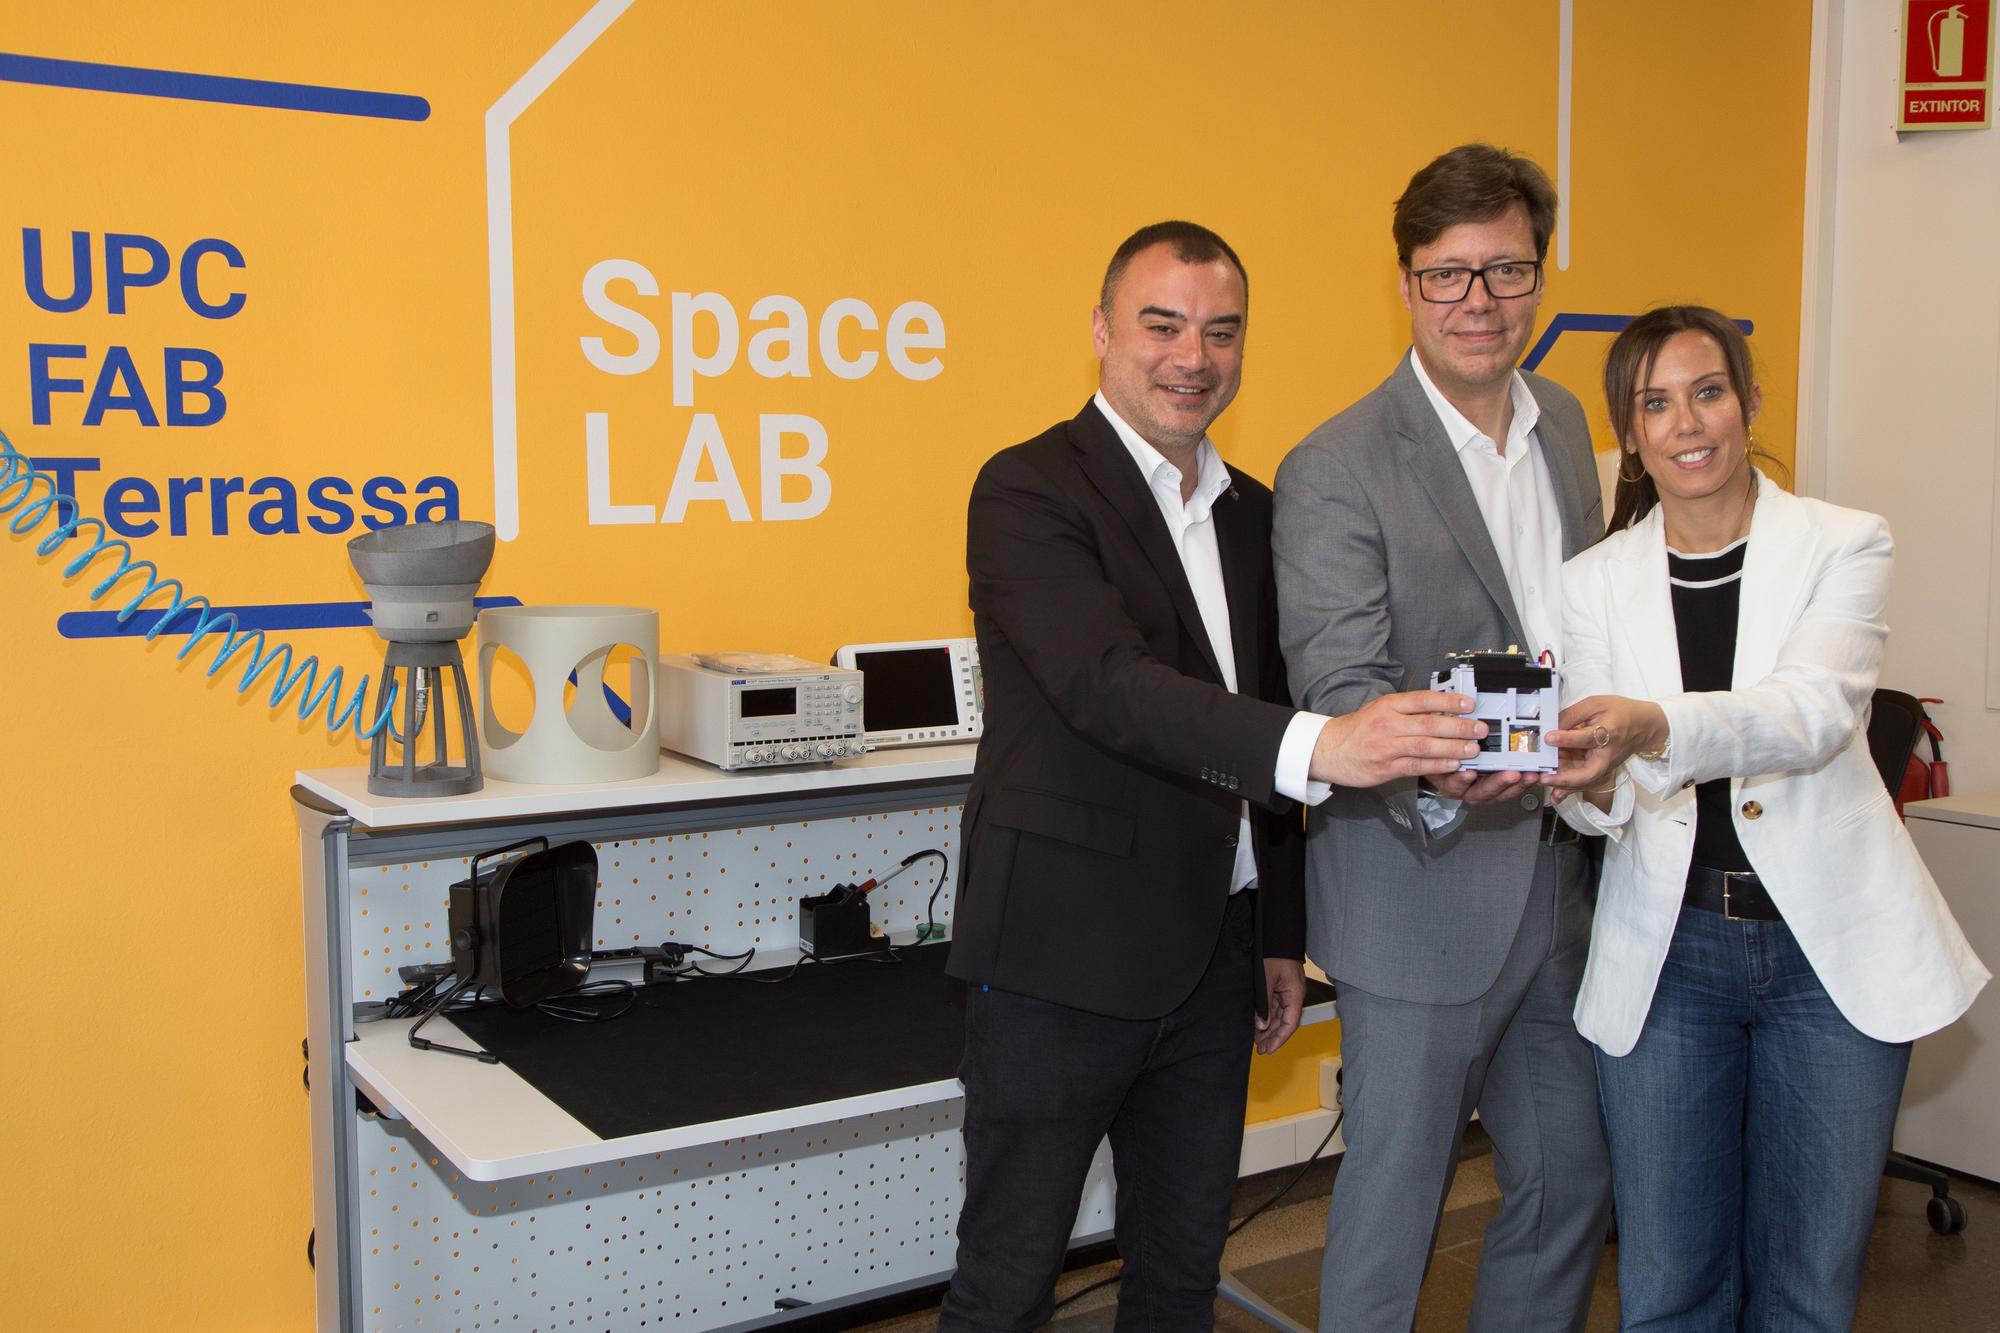 Jordi Ballart y Marta Farrés firmaron en el libro de honor de ESEIAAT y visitaron el Space Lab de la UPC Fab Terrassa